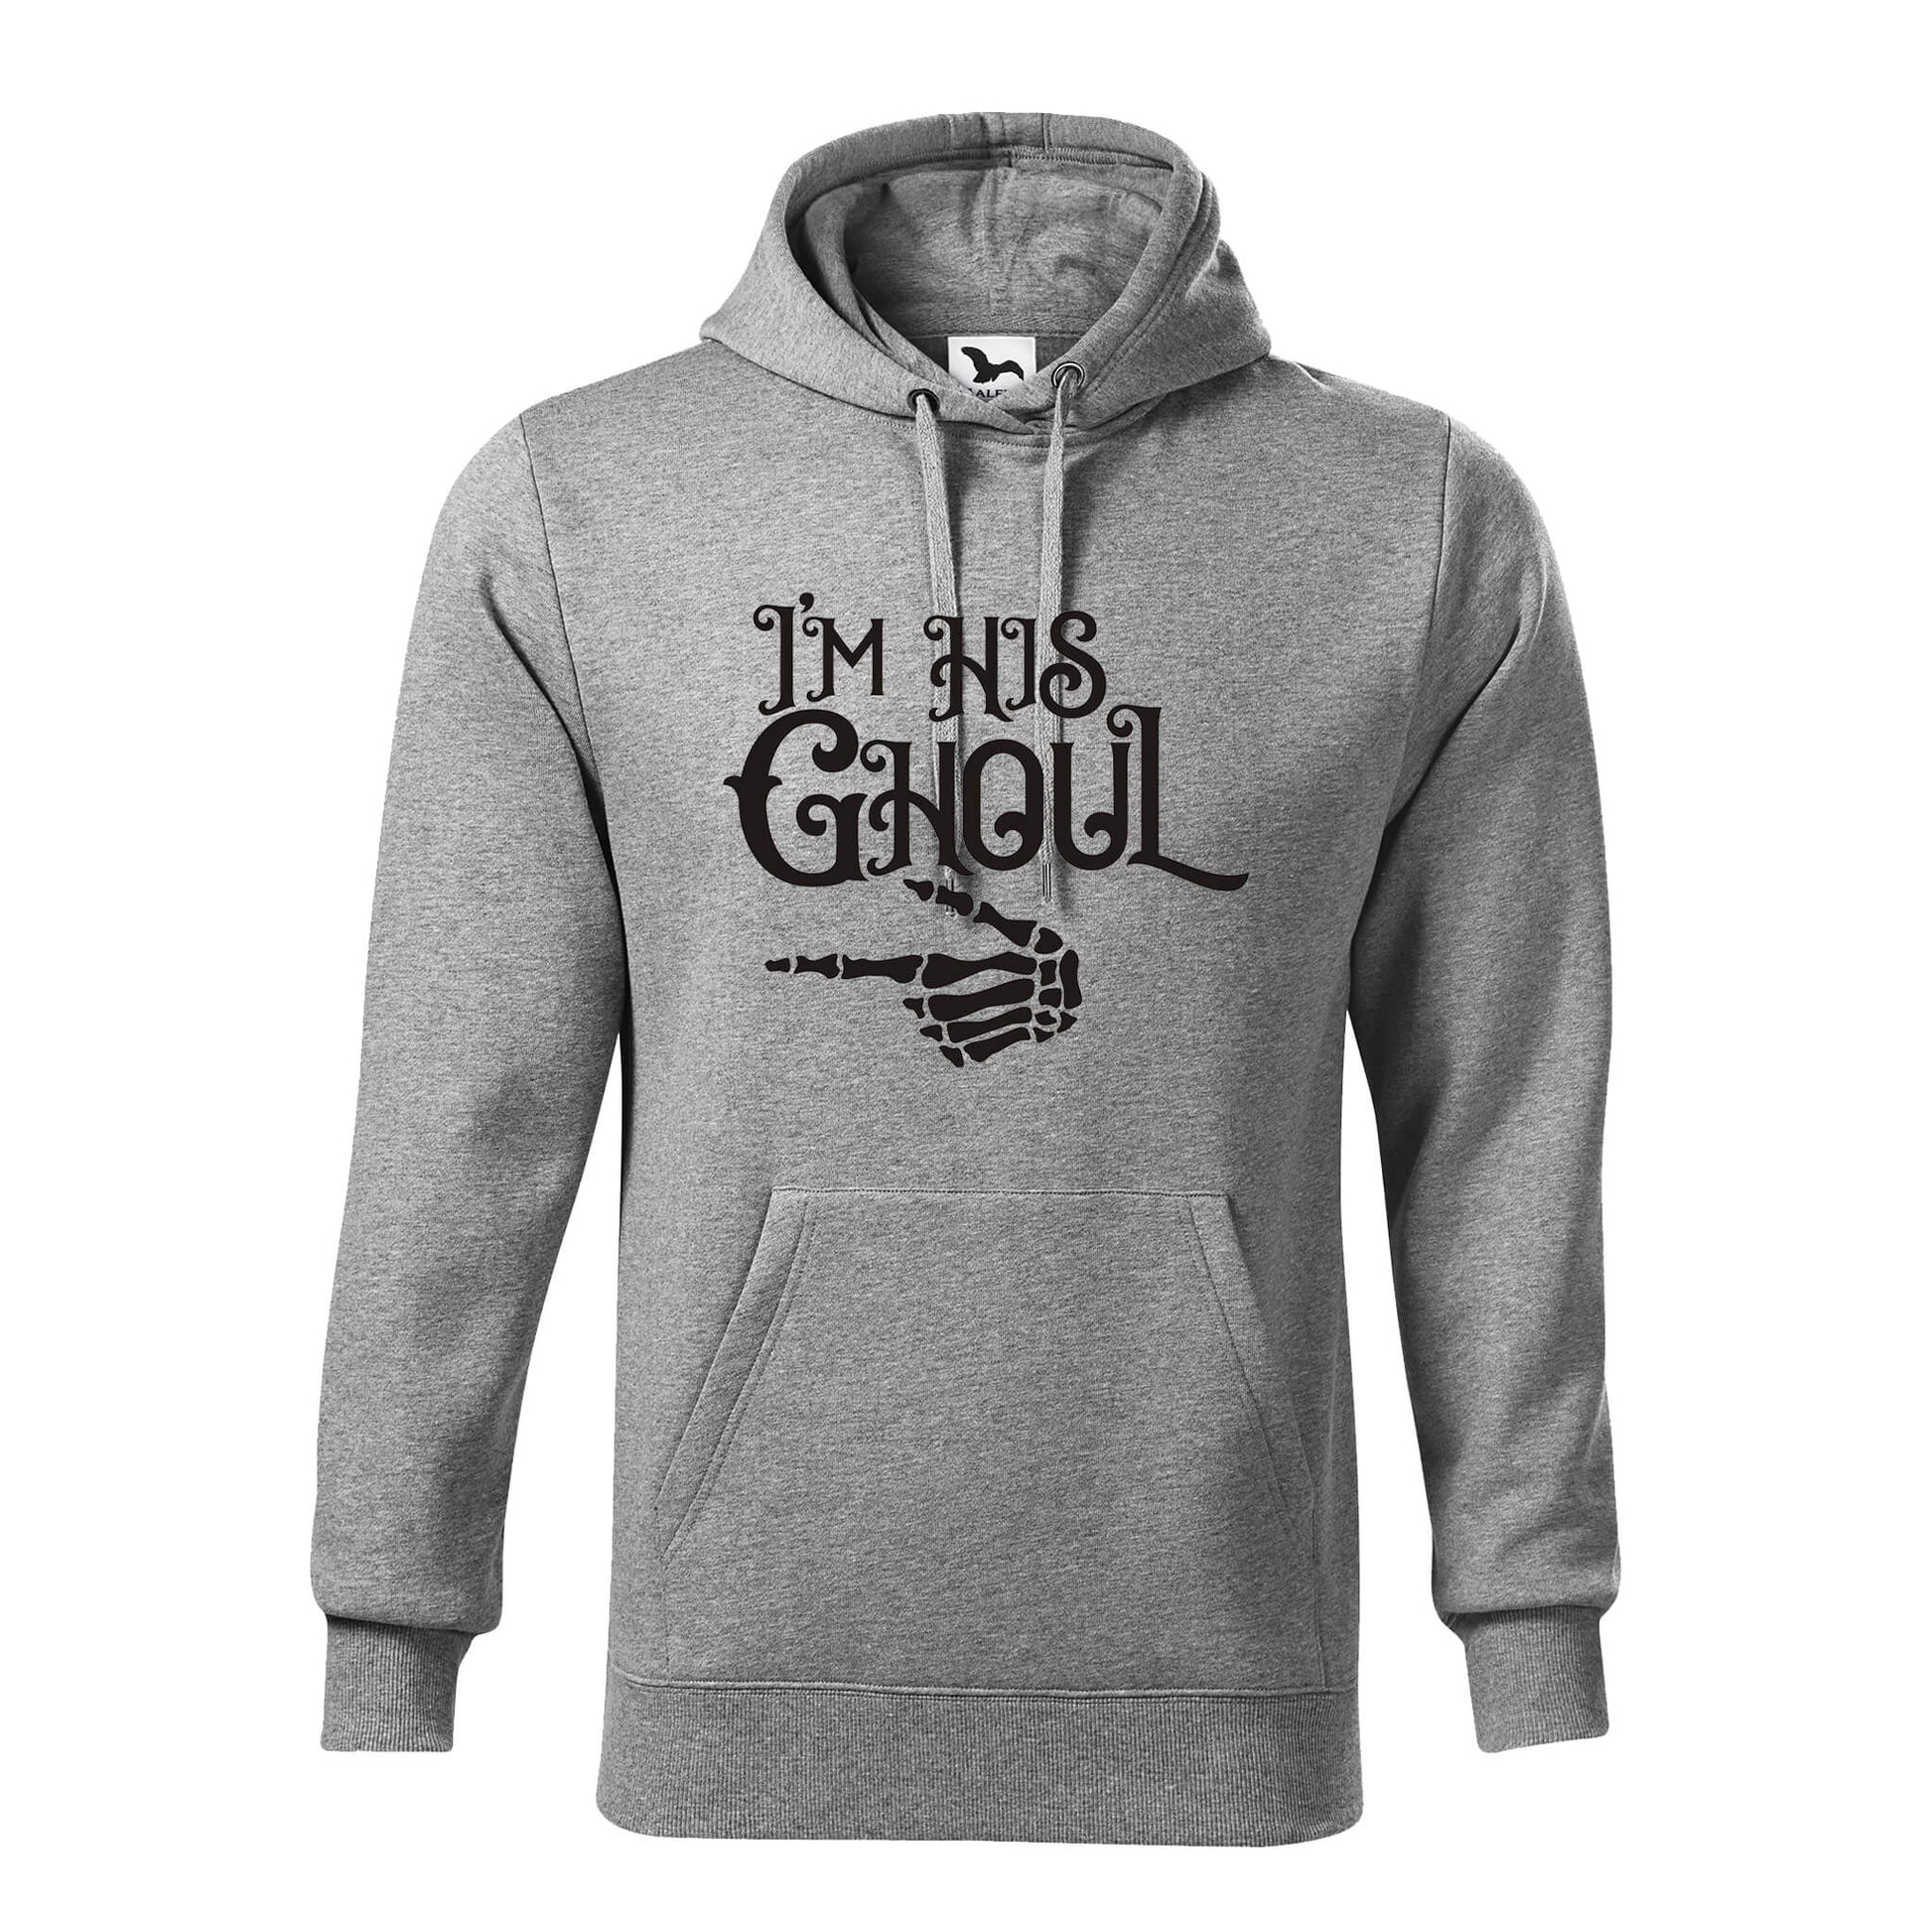 Im his ghoul hoodie - rvdesignprint